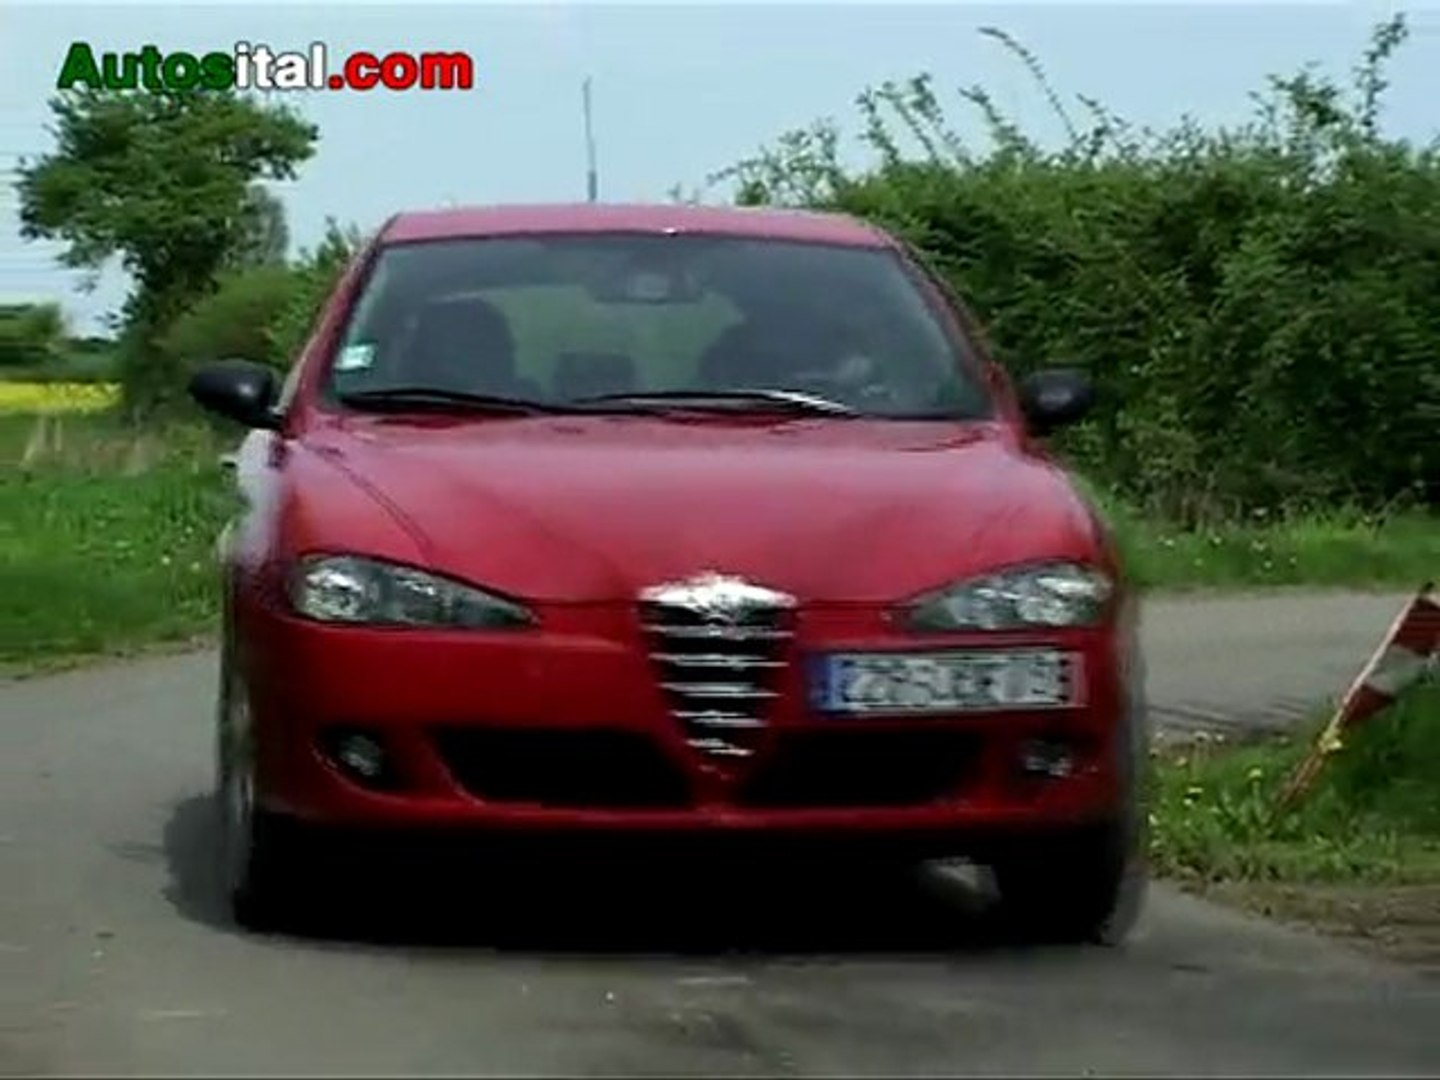 Autosital - Essai Alfa Romeo 147 2.0 TS Selespeed Selective